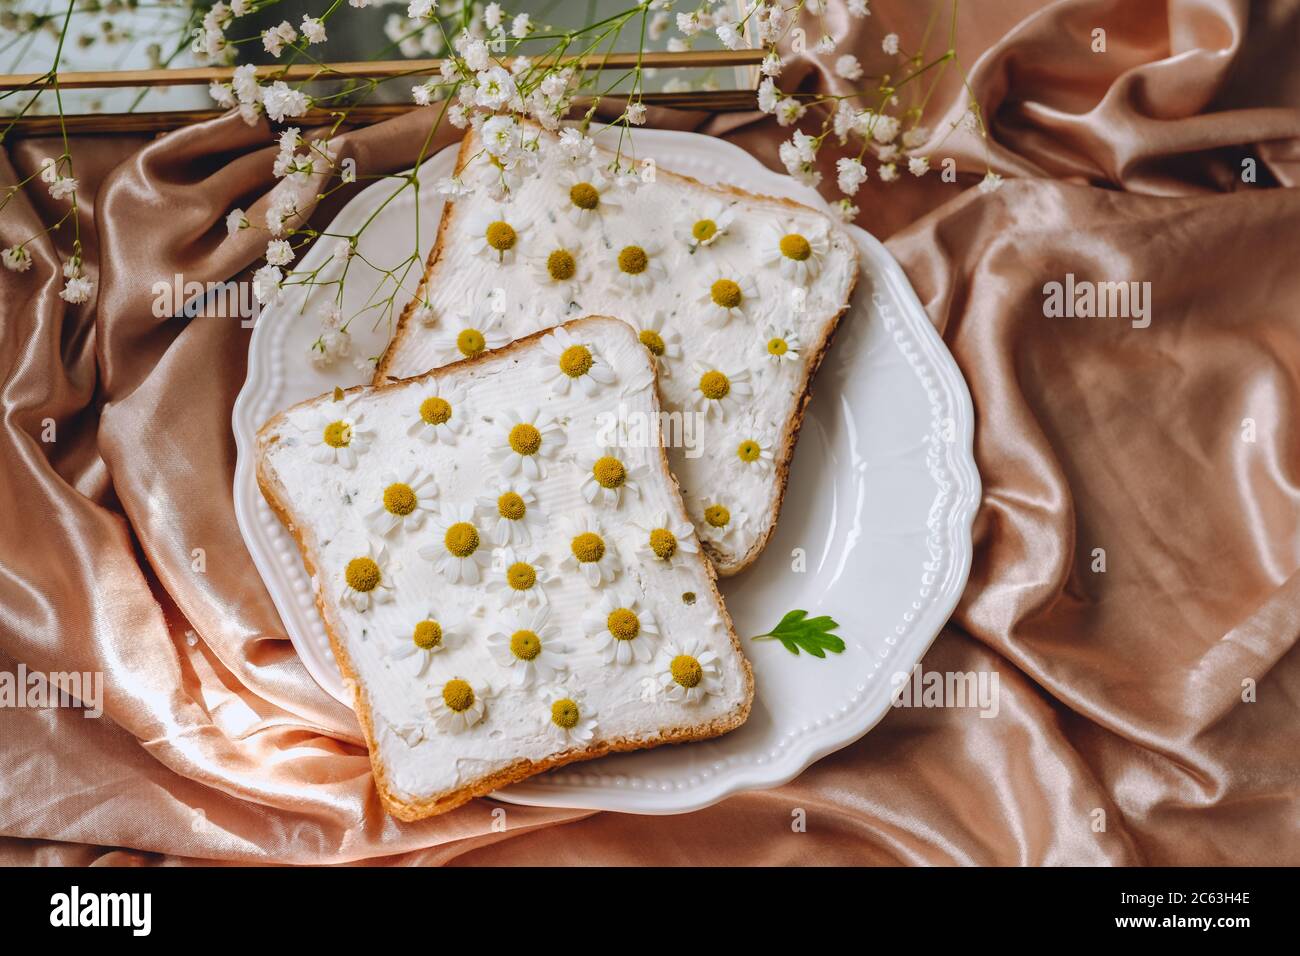 Griller le sandwich au pain avec des fleurs de camomille. Banque D'Images